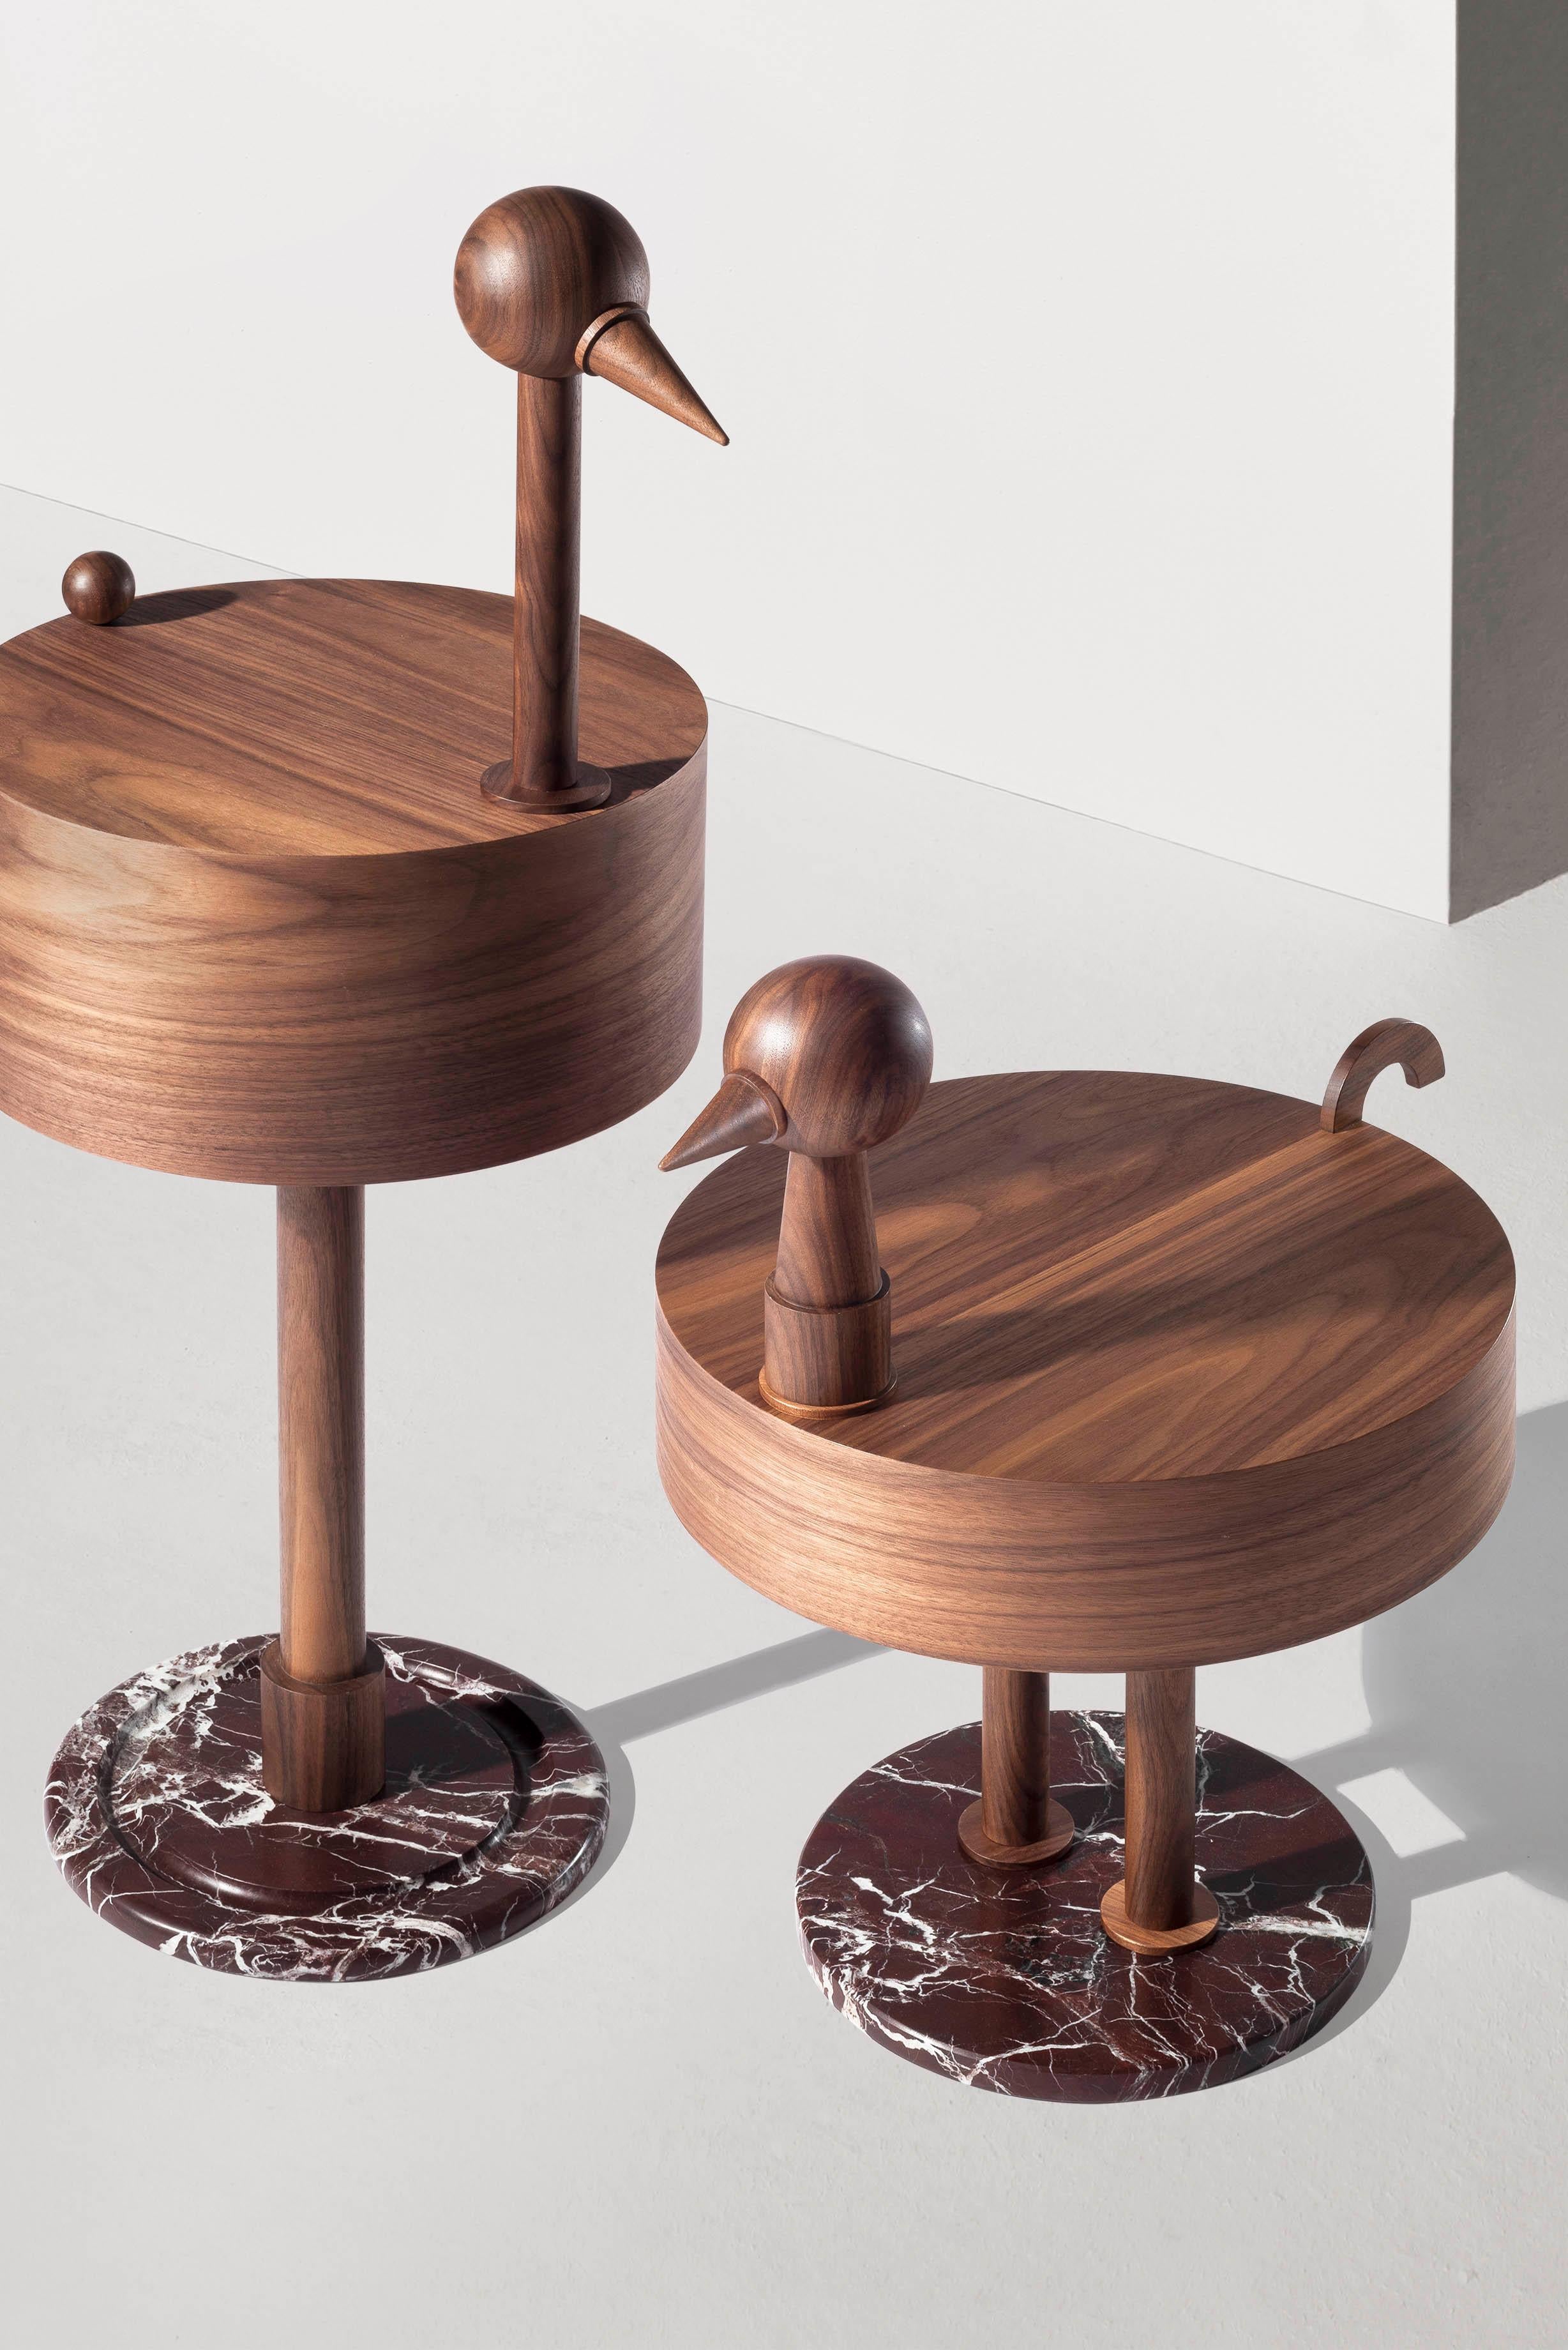 Nomon Rara Avis Side Tables by Mermelada Estudio For Sale 1